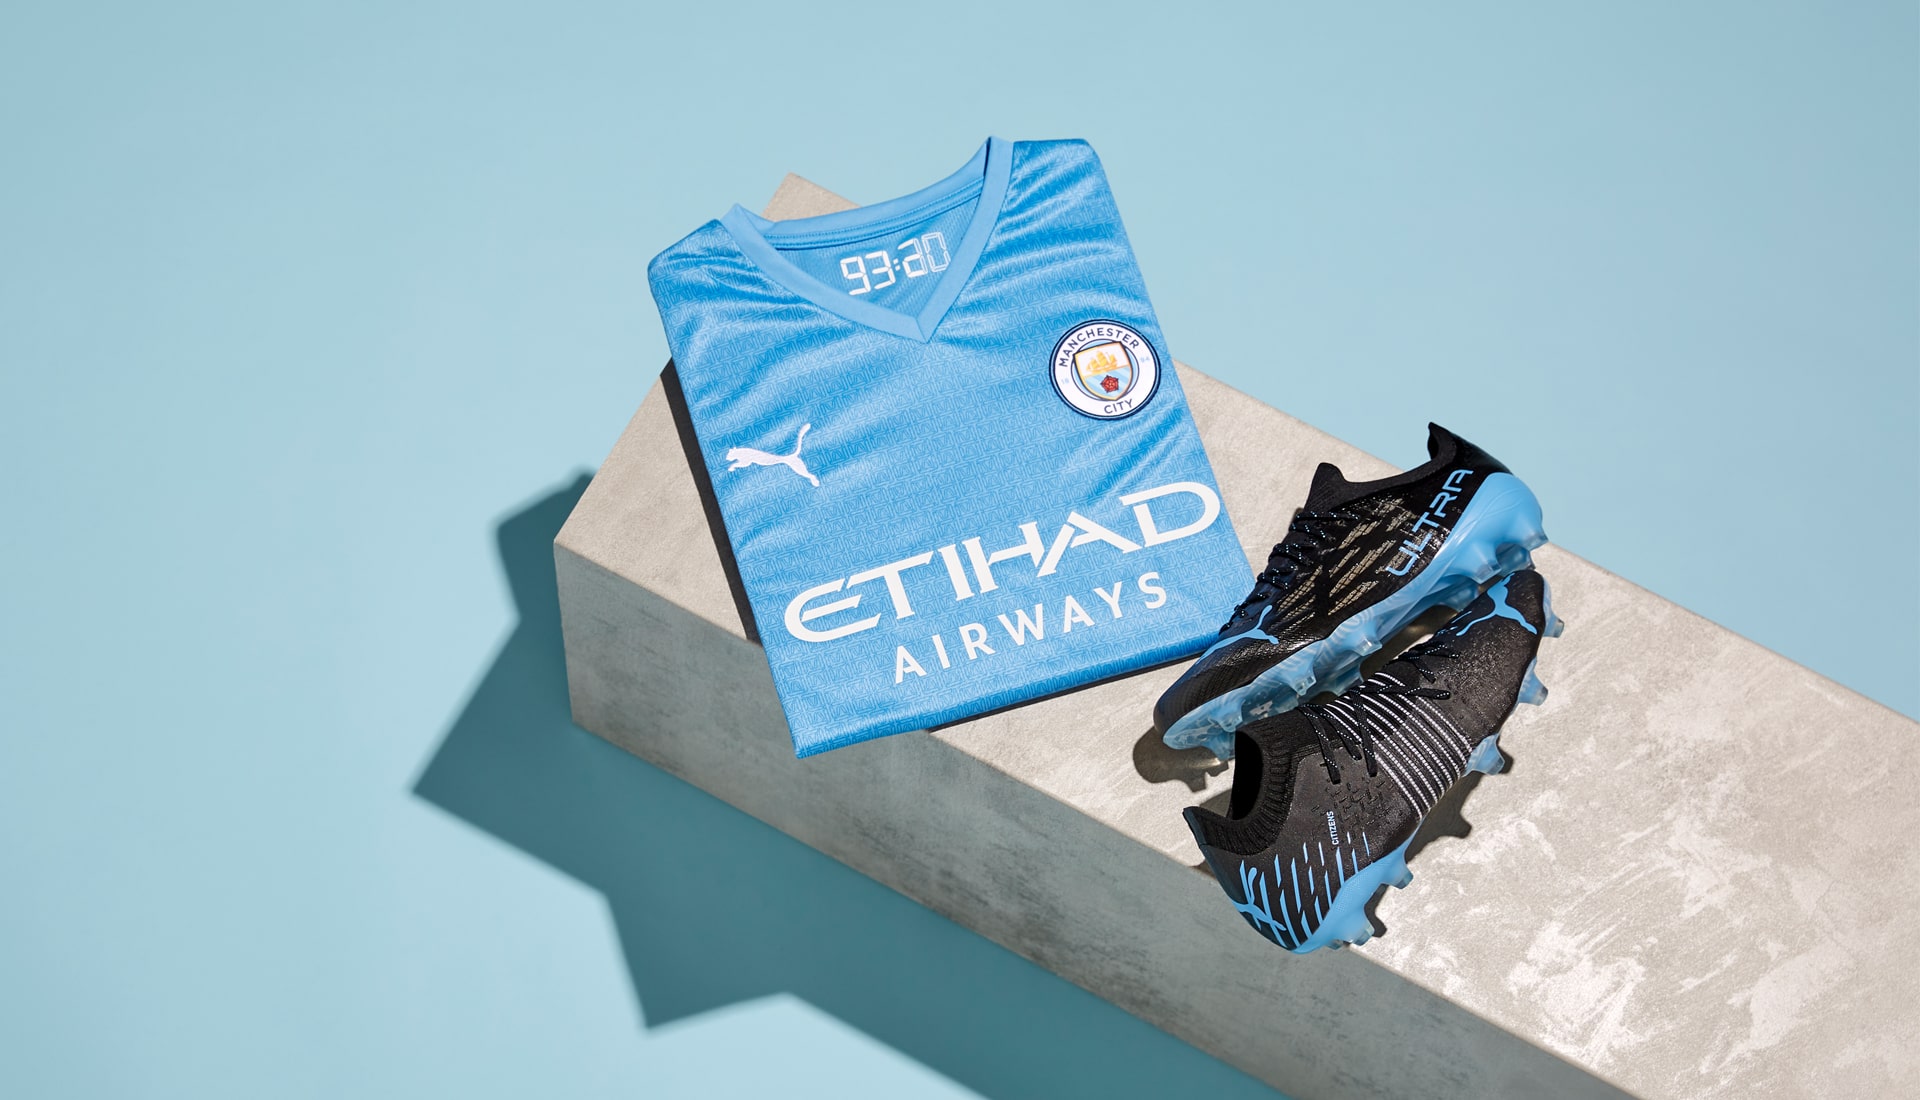 Puma phát hành bộ sưu tập ấn tượng dành riêng cho 'Manchester City'